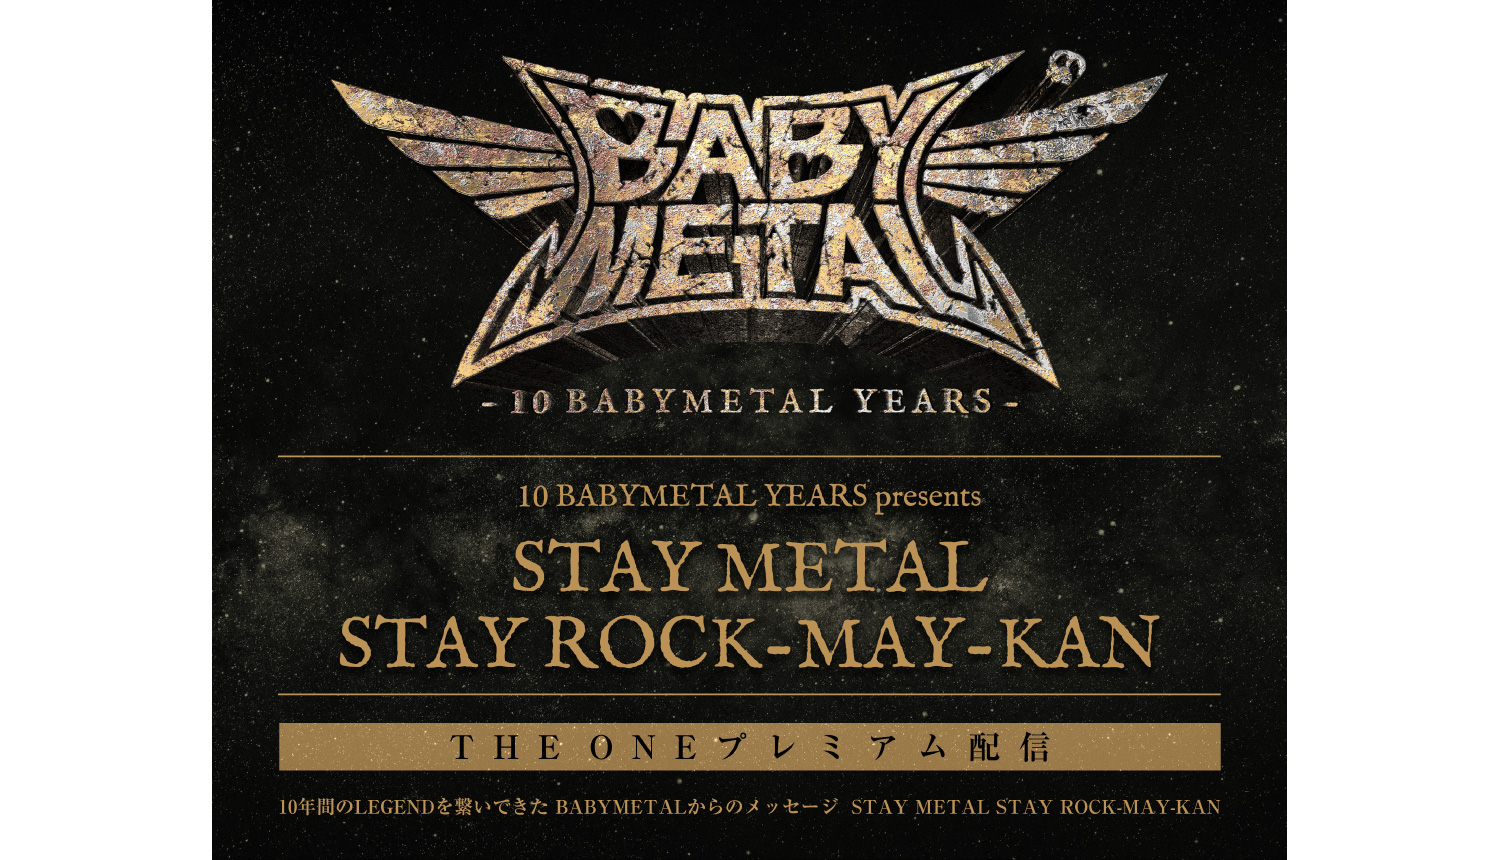 stay-metal-stay-rock-may-kan-babymetal-%e3%83%99%e3%83%93%e3%83%bc%e3%83%a1%e3%82%bf%e3%83%ab